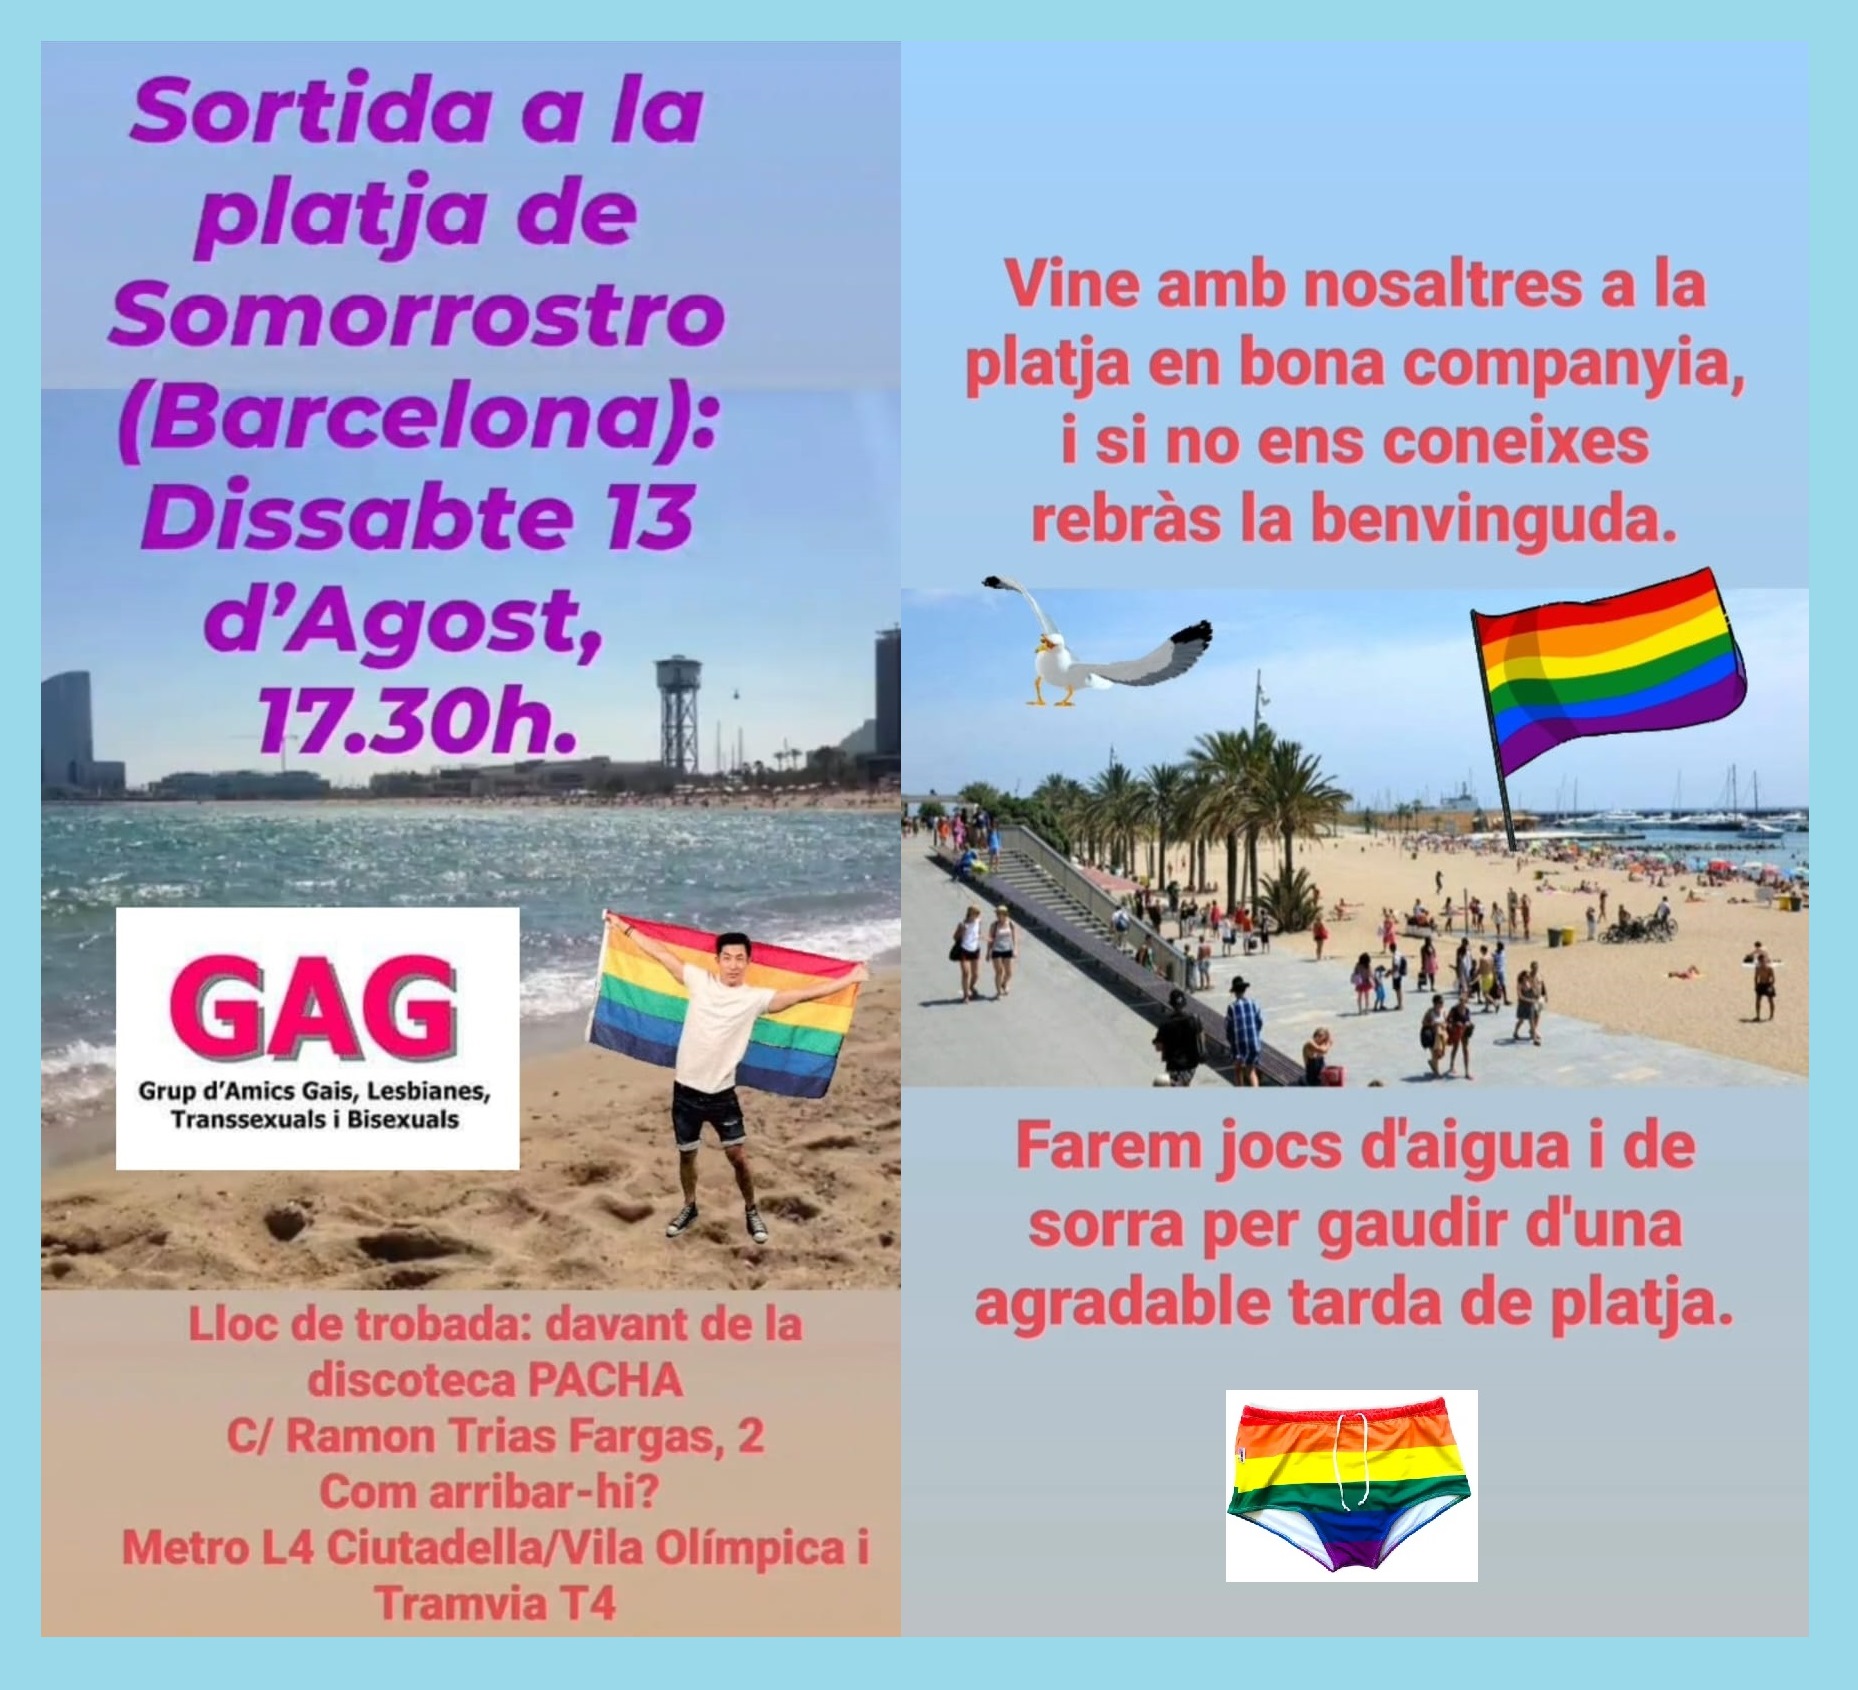 Dissabte 13 d’Agost, 17.30h. – Sortida a la platja de Somorrostro (Barcelona).